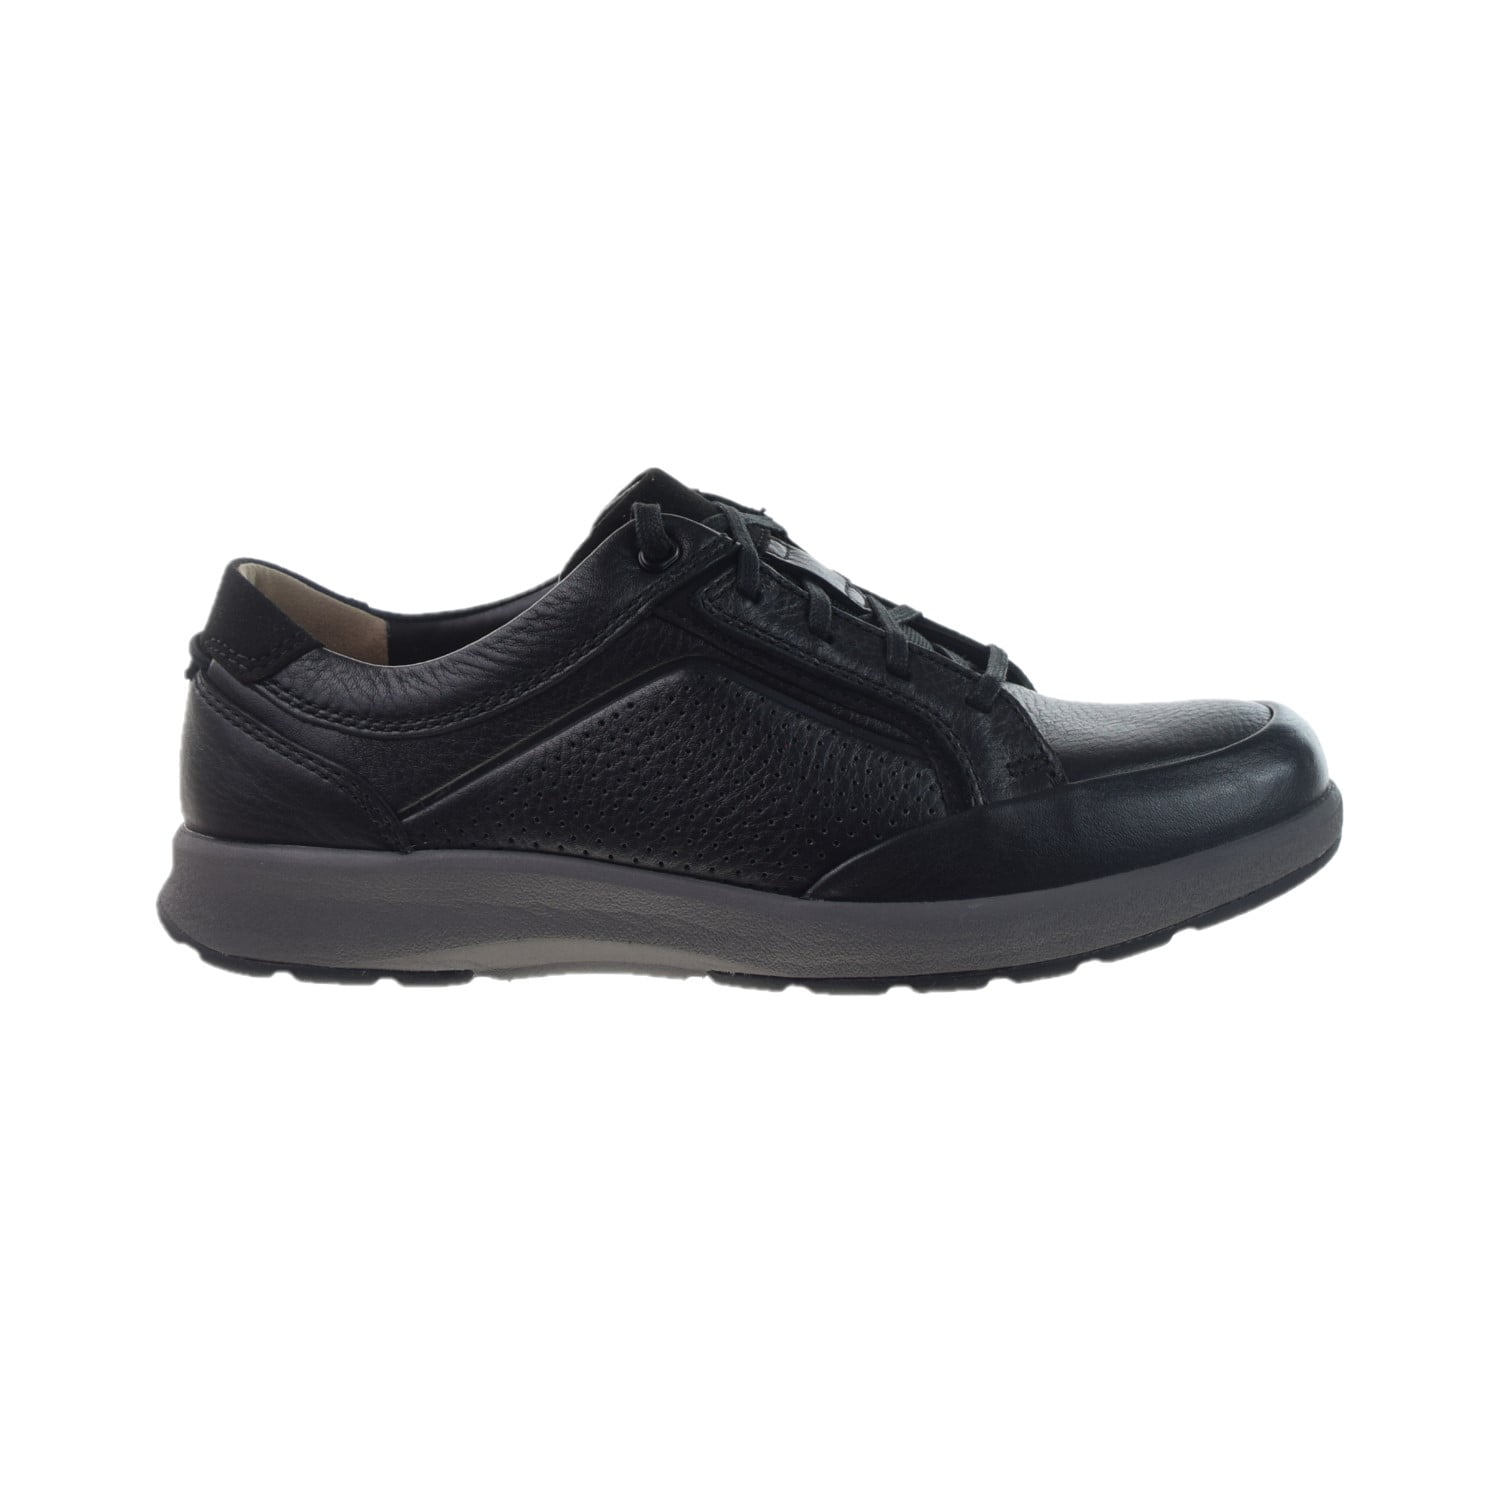 Clarks Un Trail Form Shoes Black 26146641 - Walmart.com